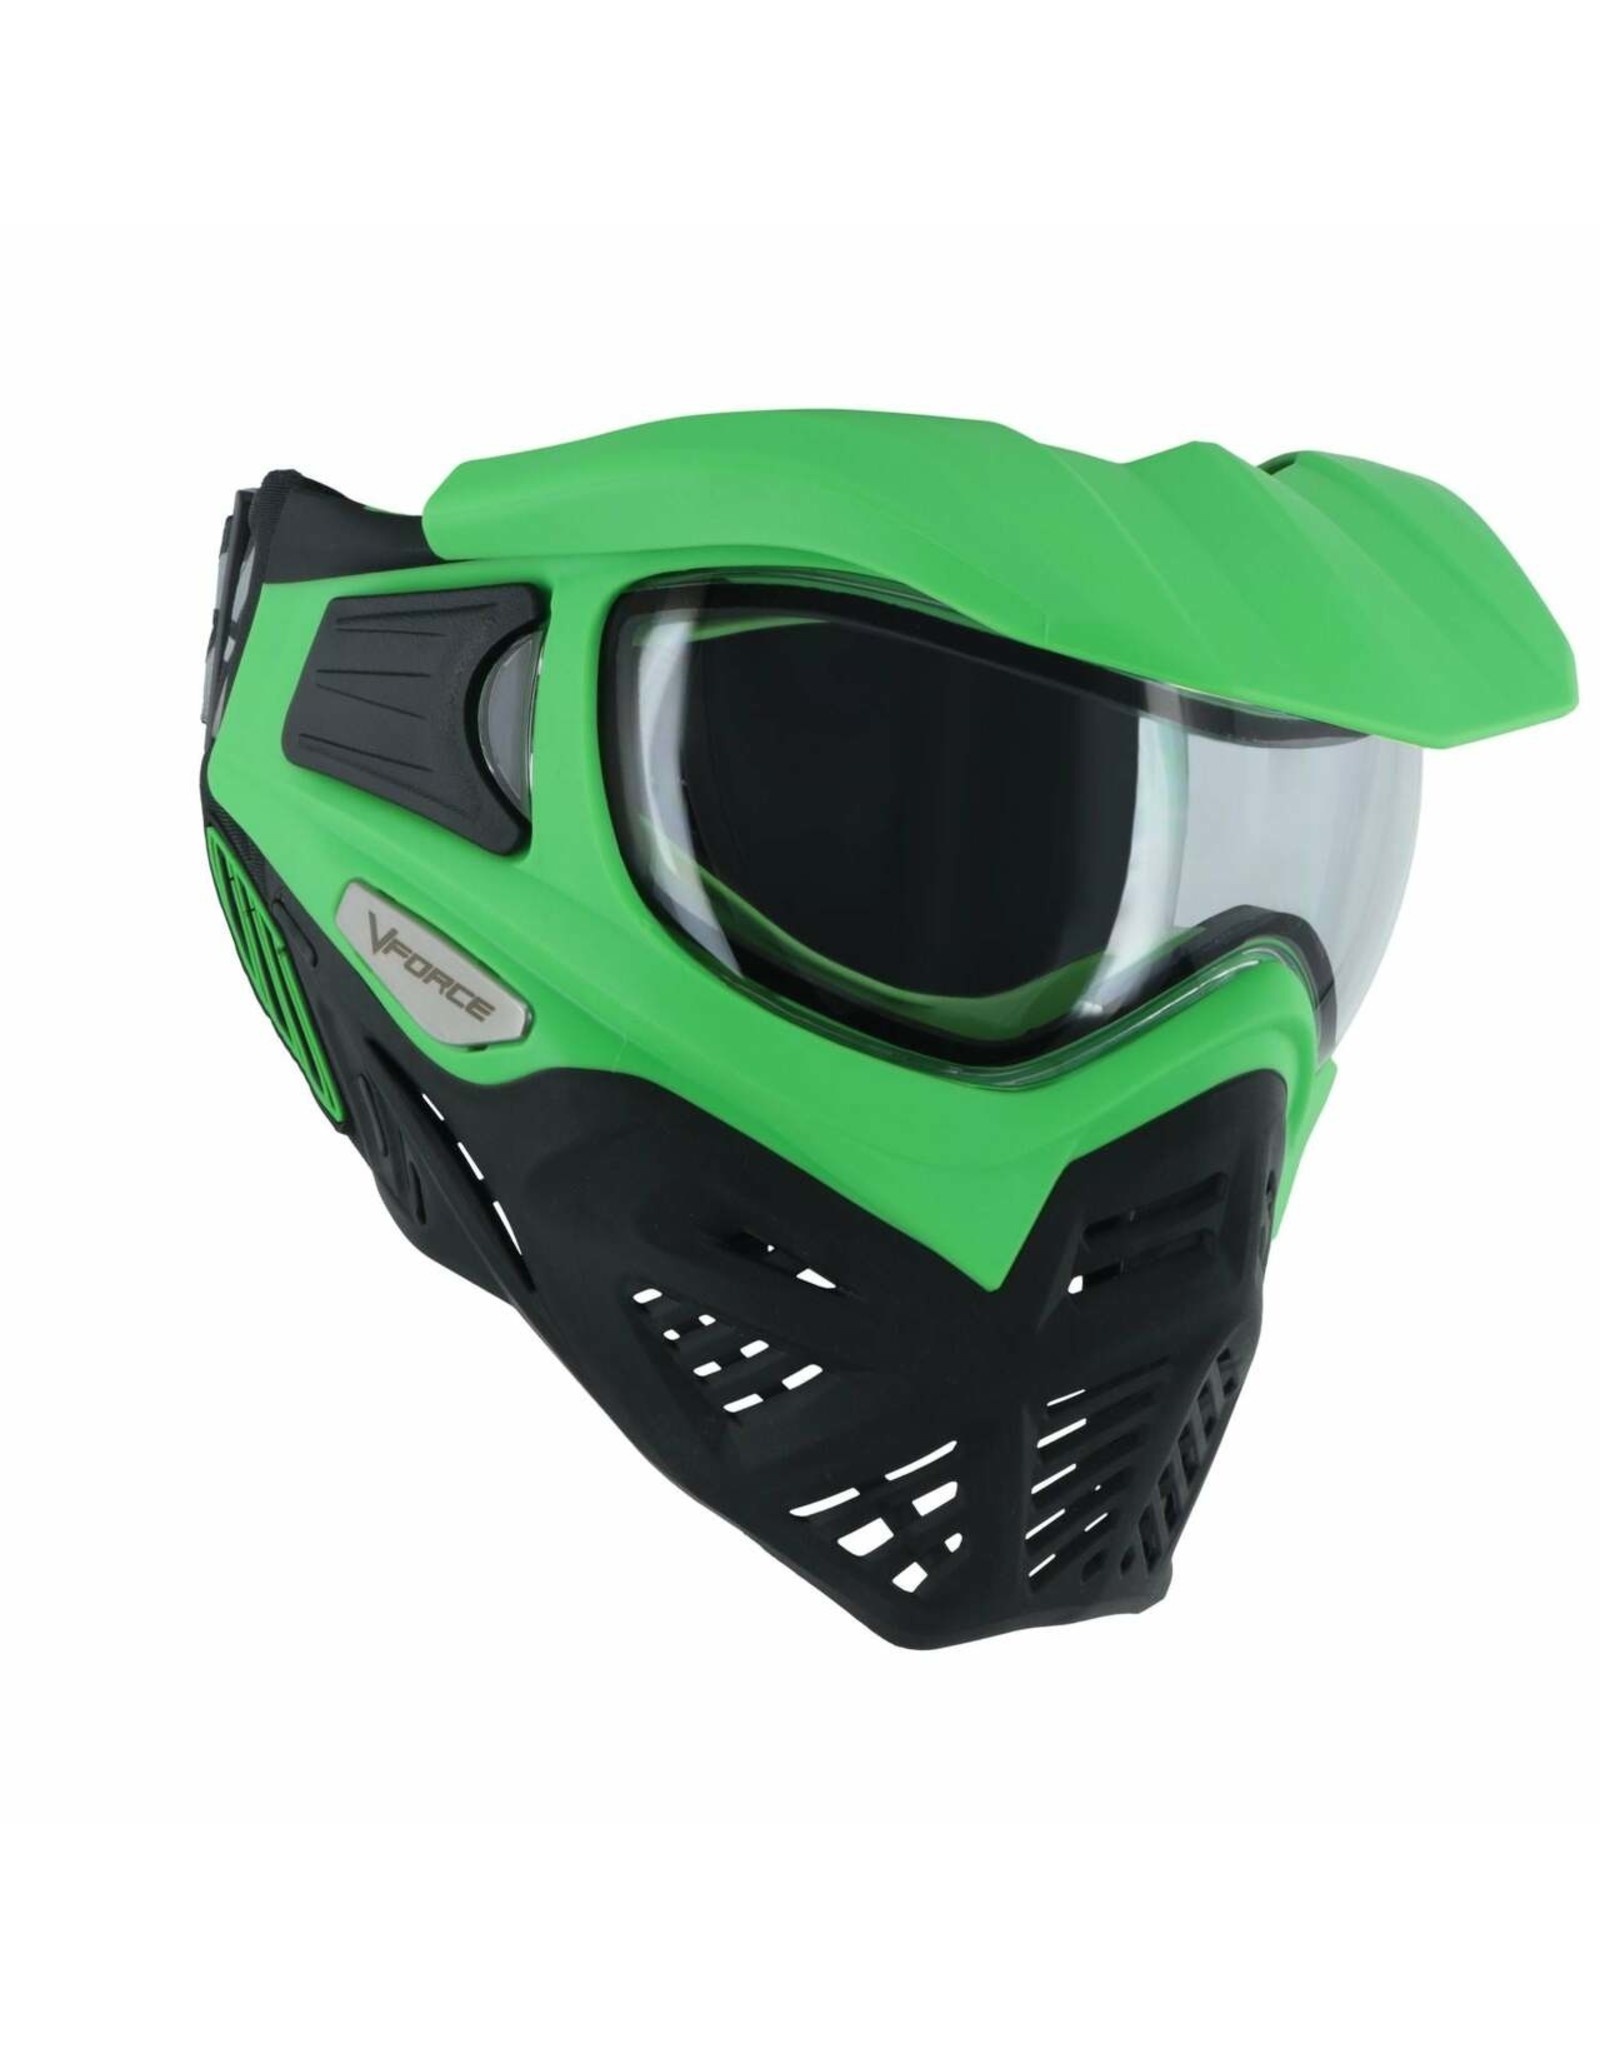 Vforce VForce Grill 2.0 Venom Thermal Mask Clear Lens - Green/Black